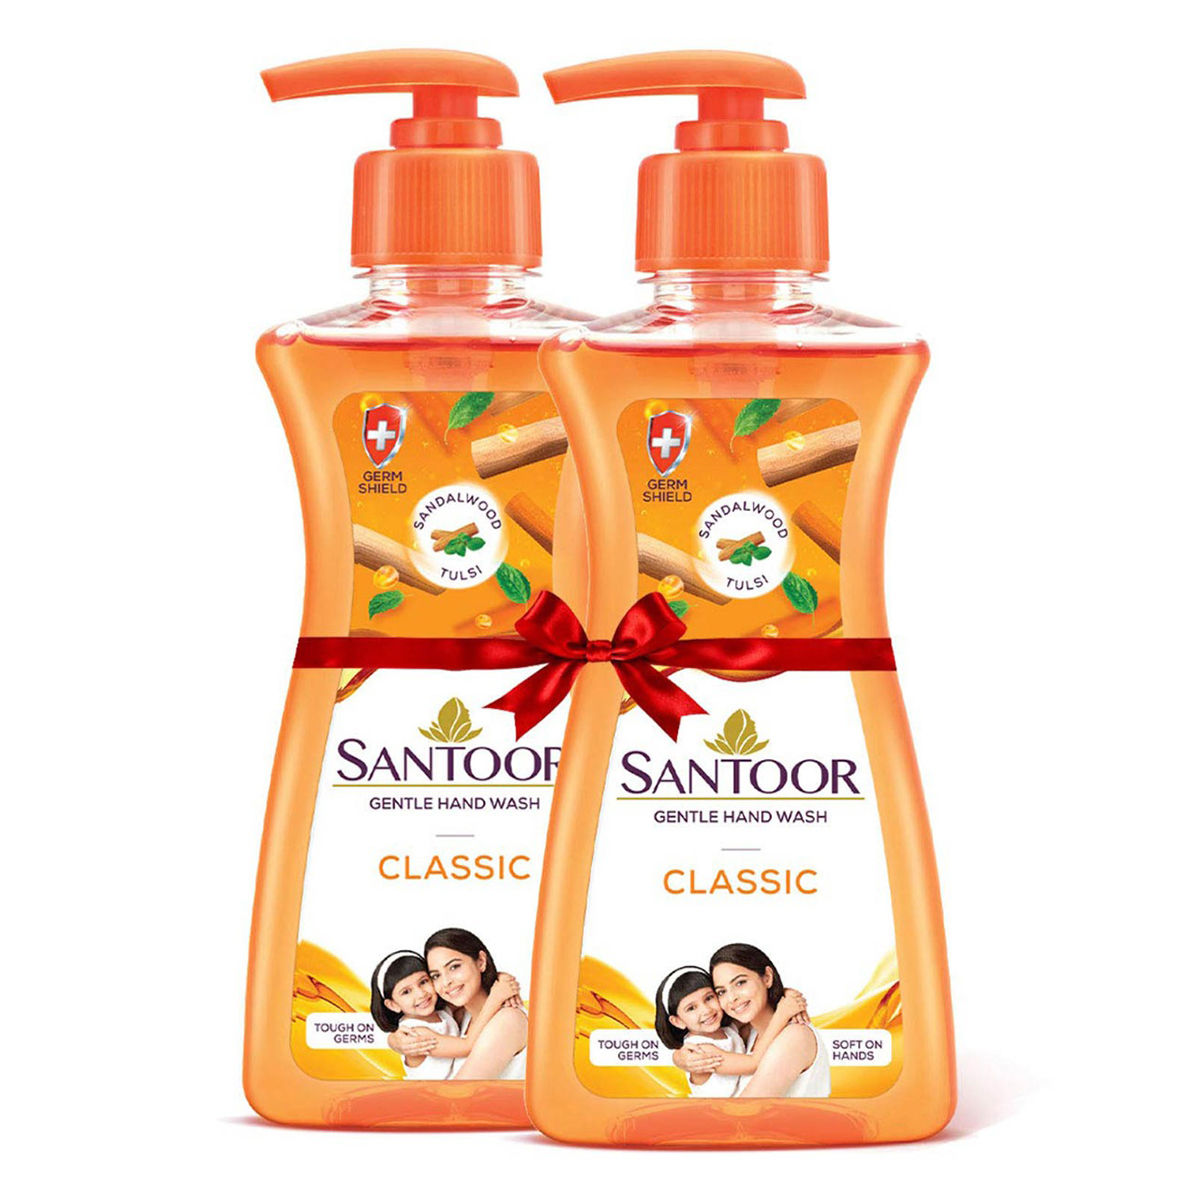 Buy Santoor Gentle Classic Handwash, 215 ml (Buy 1, Get 1 Free) Online